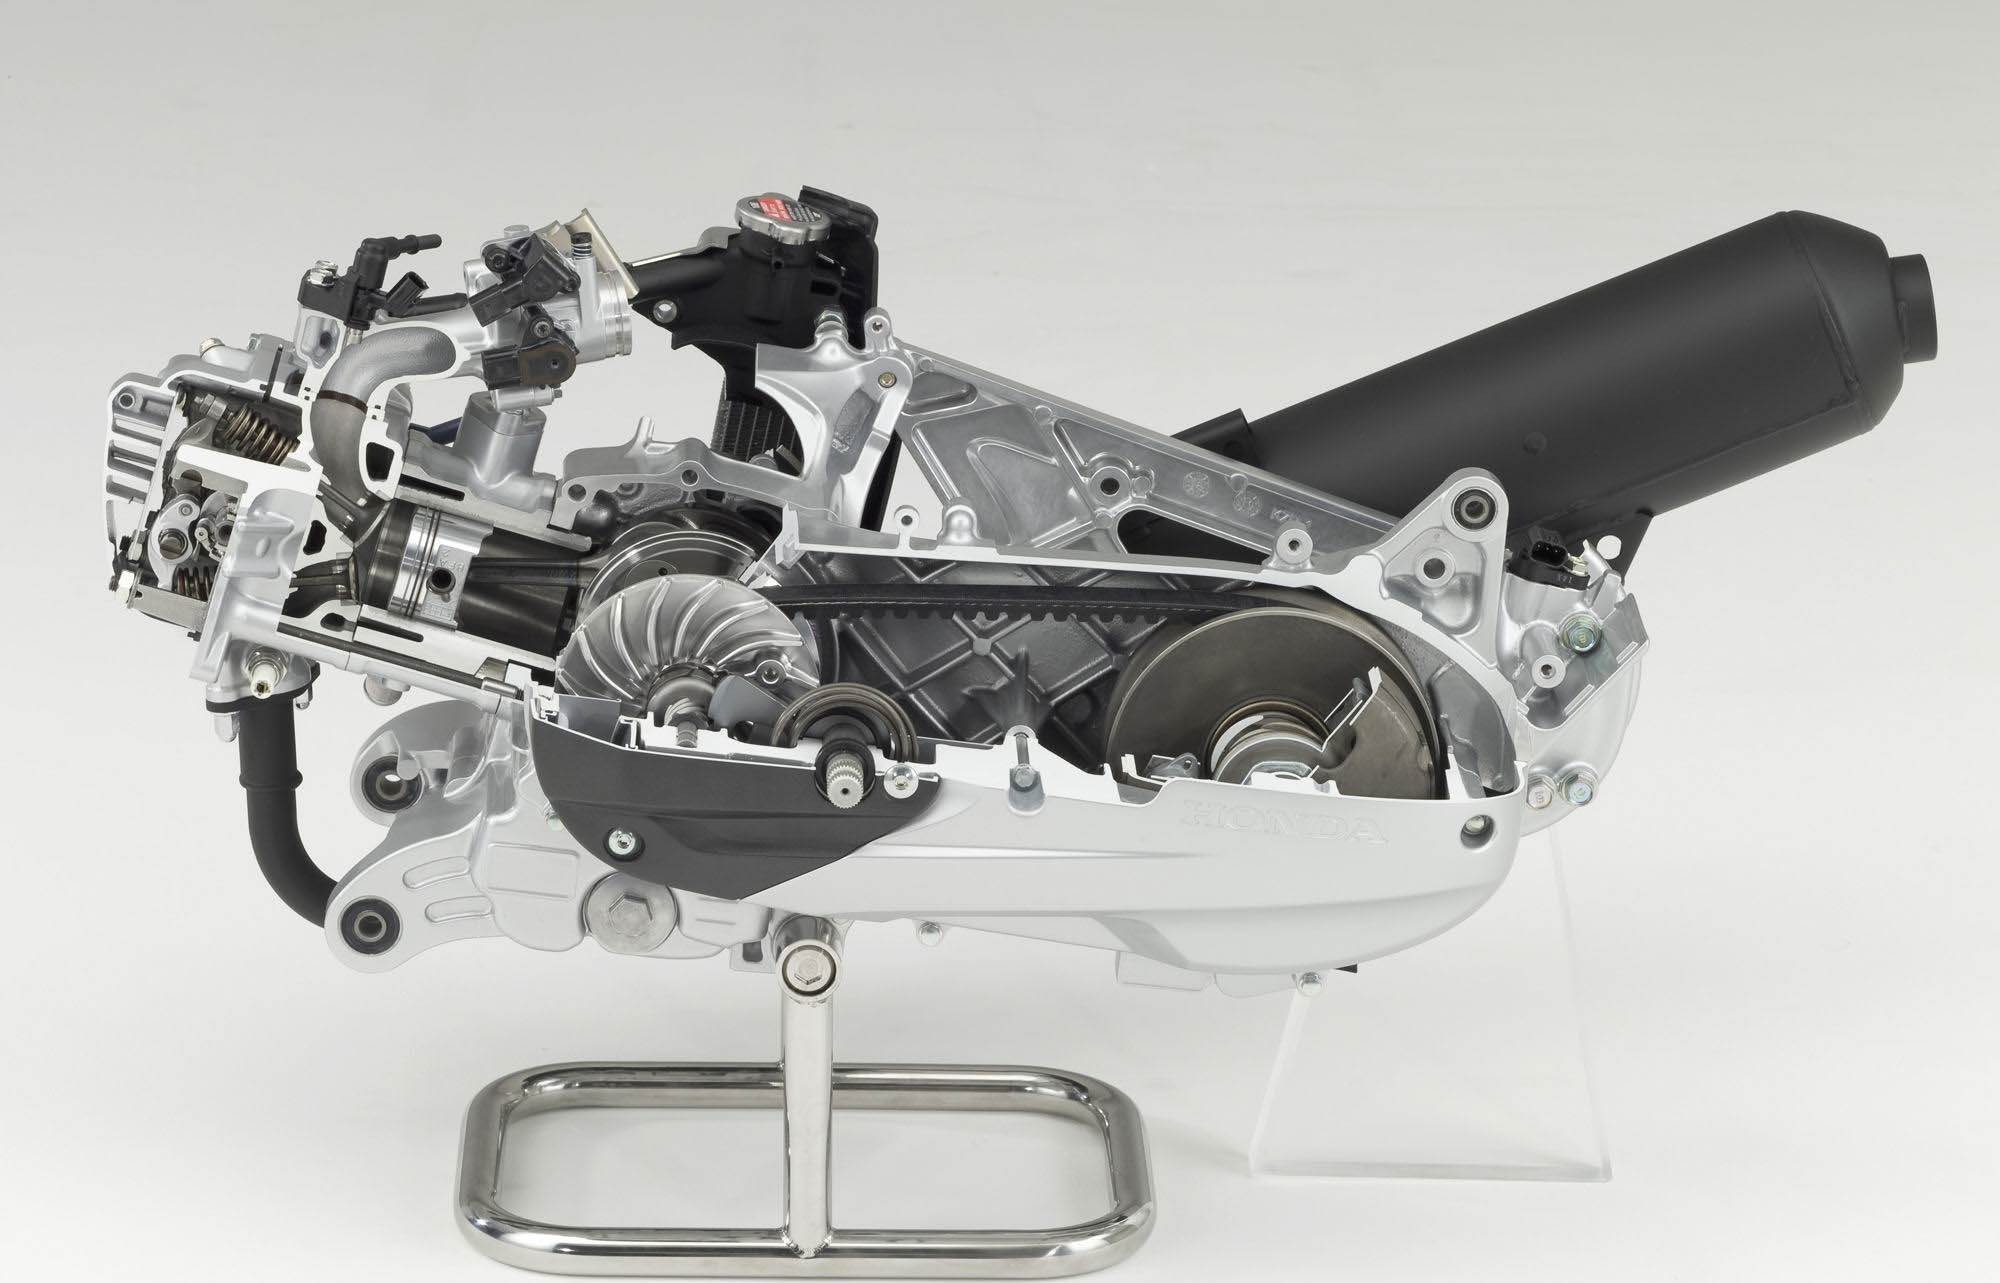 Ремонт двигателя скутера. Двигатель скутера Хонда 150. Двигатель скутера 139qmb в разрезе. Вариаторный 125 СС мотор. 125 QMB двигатель.